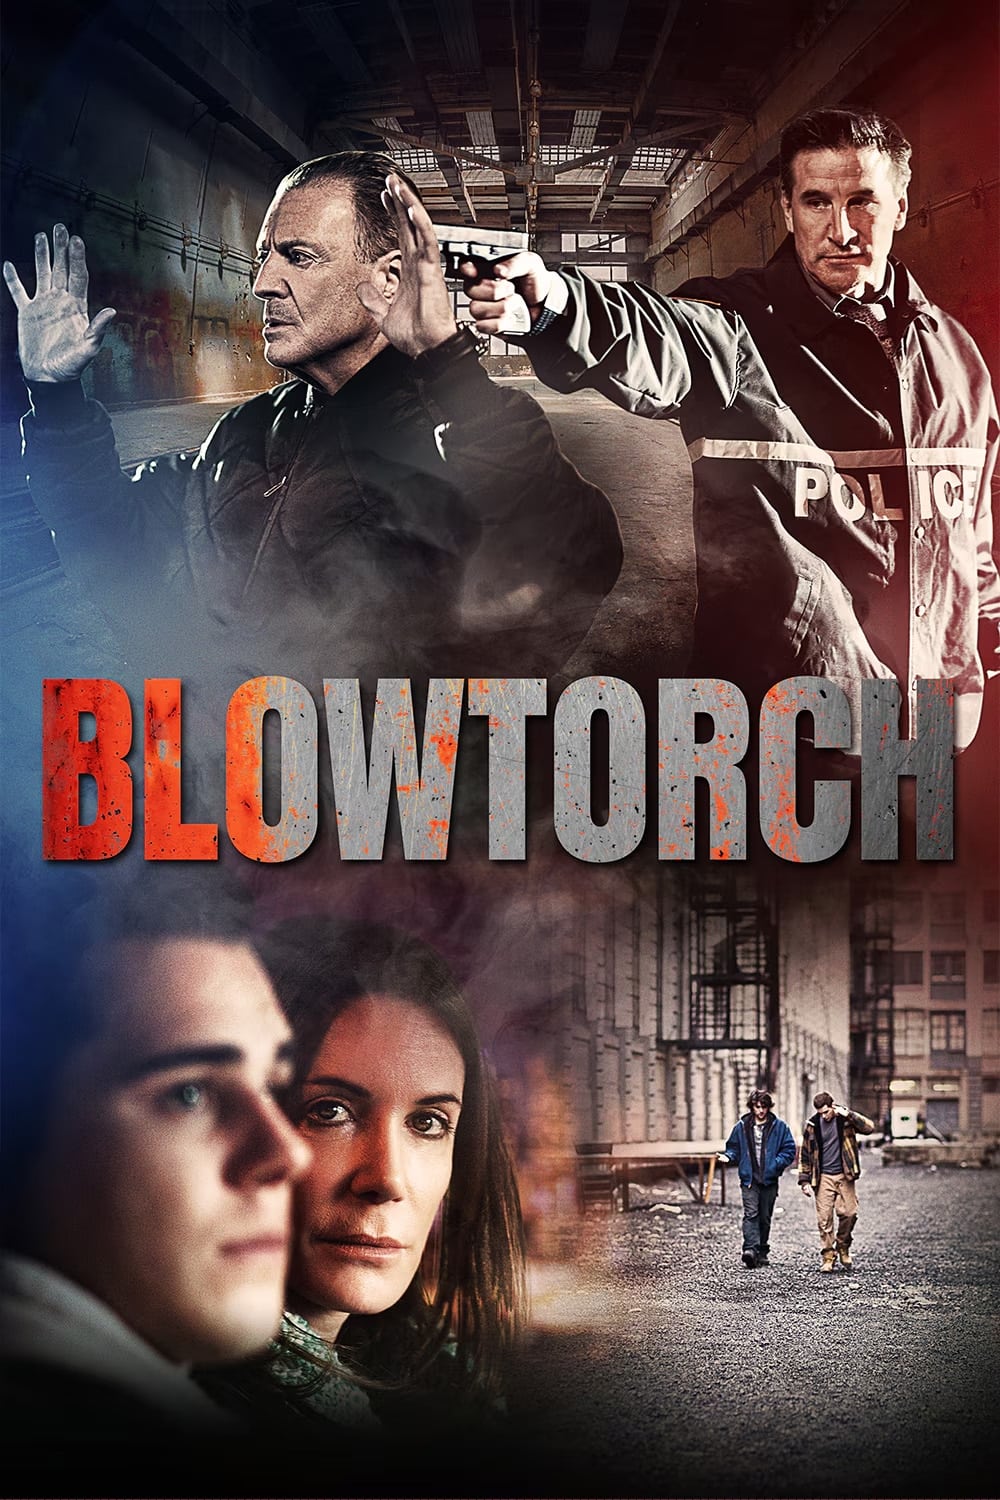 Blowtorch film